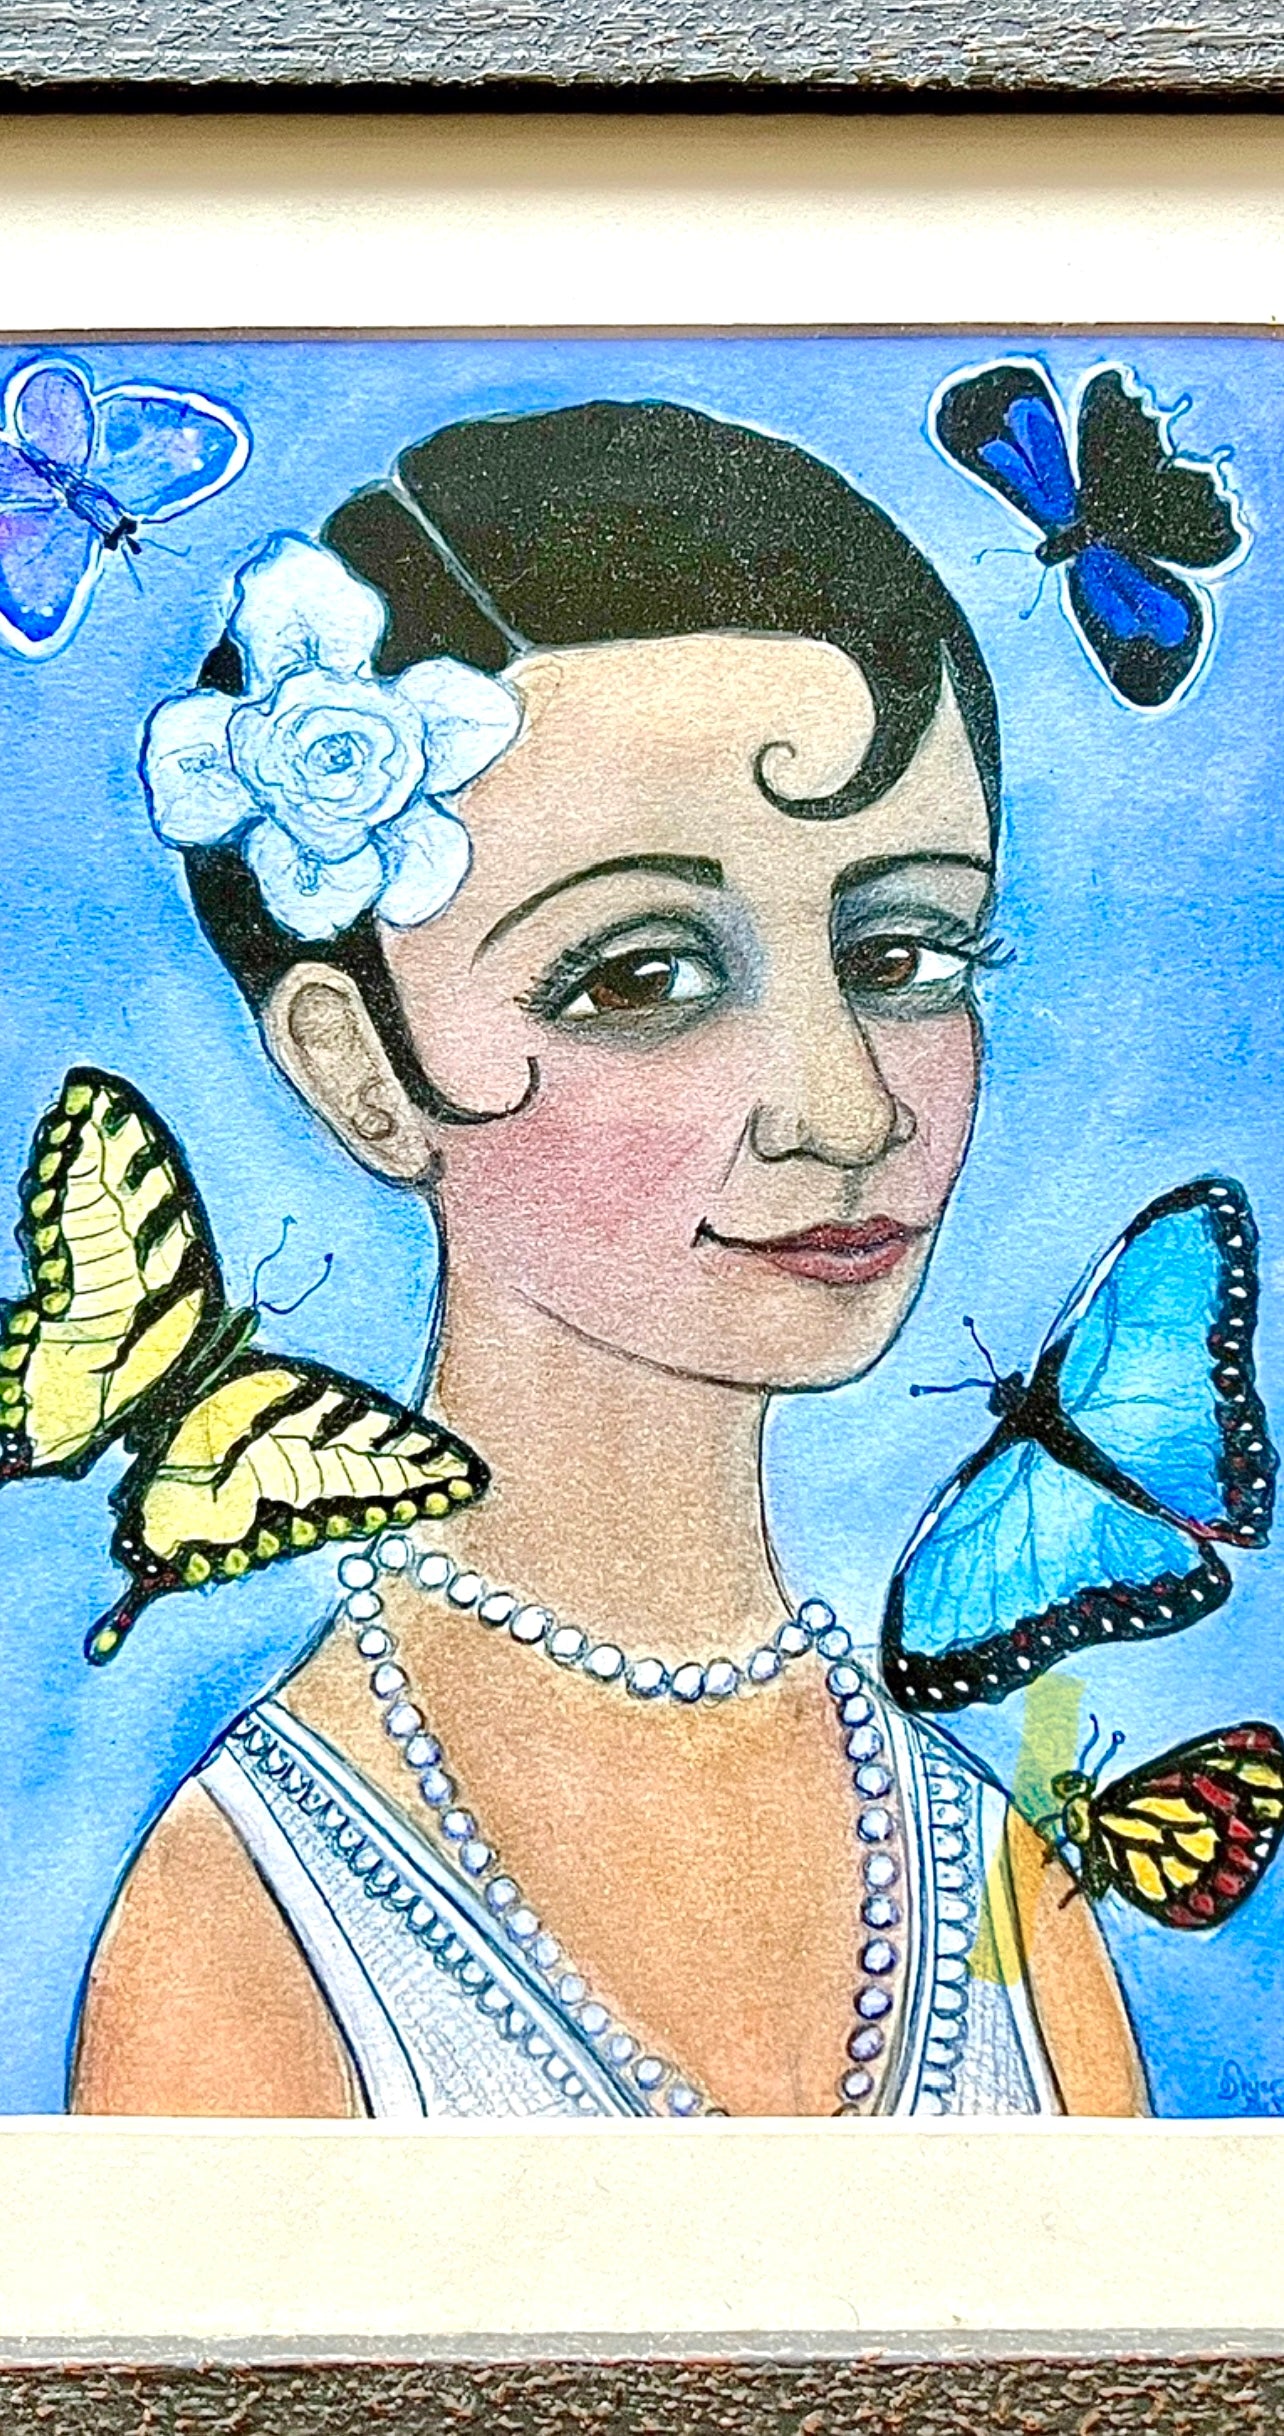 Woman With Pin Curls & Butterflies; Art Print